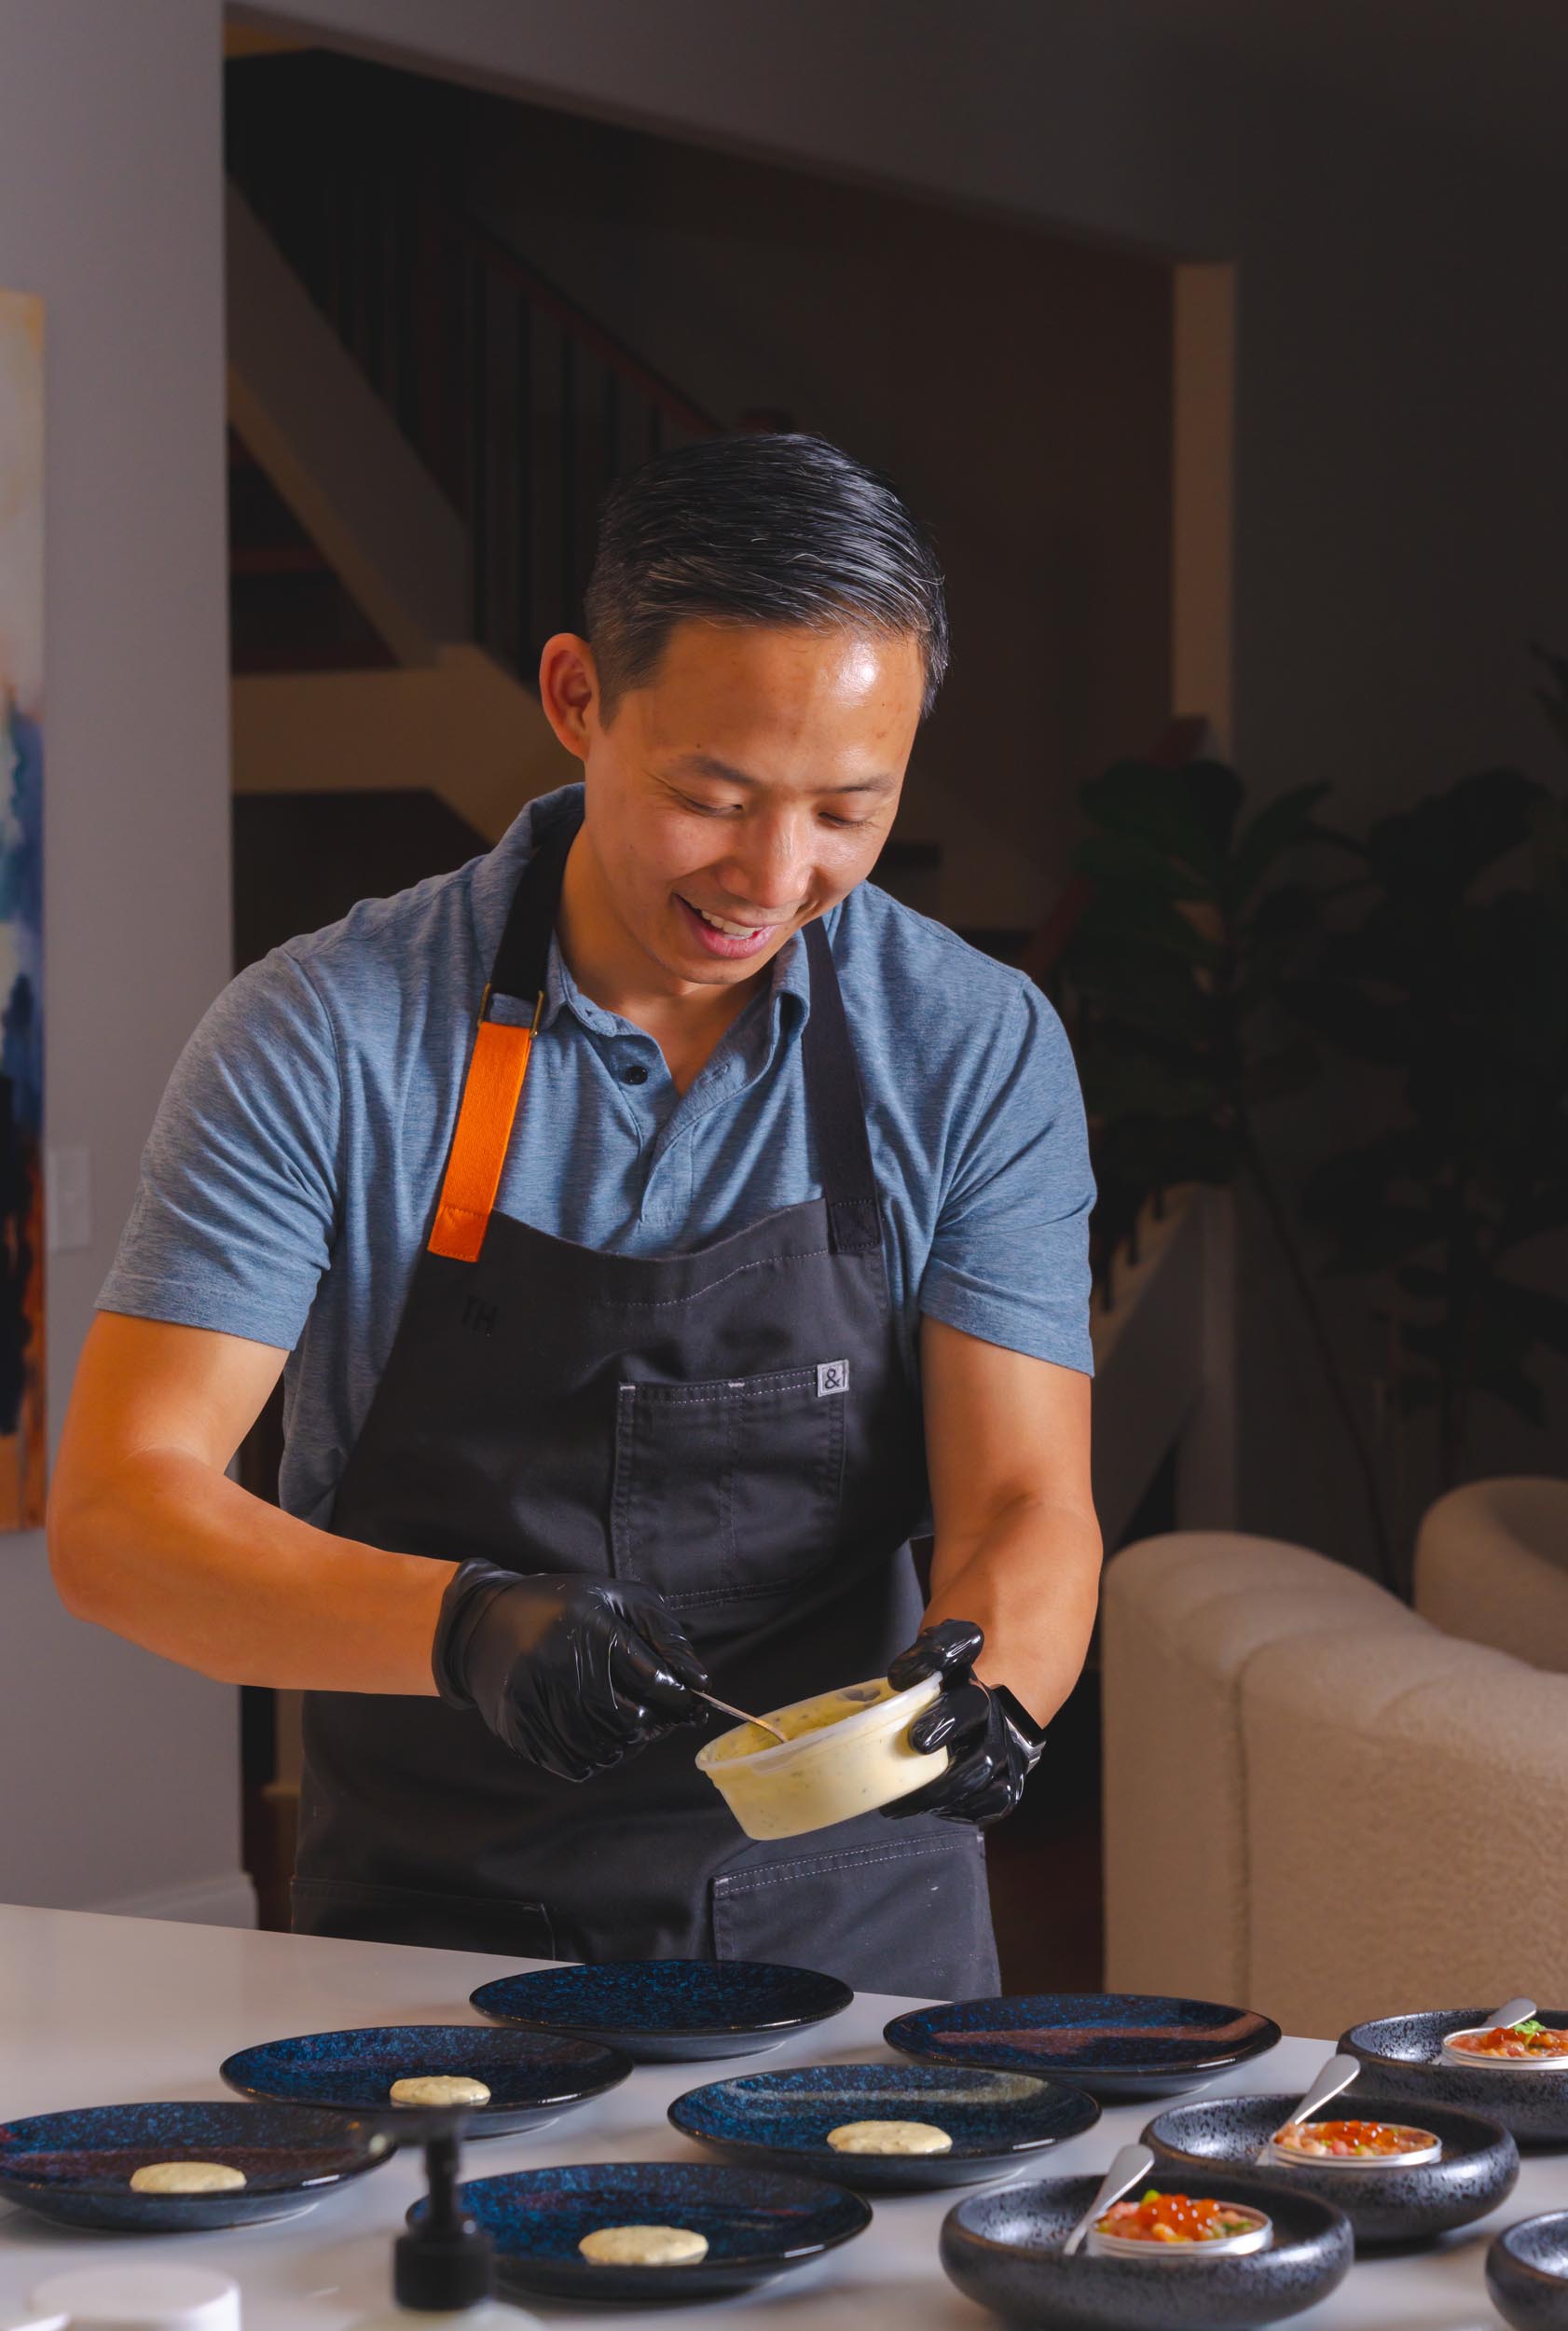 Chef Tony Huynh